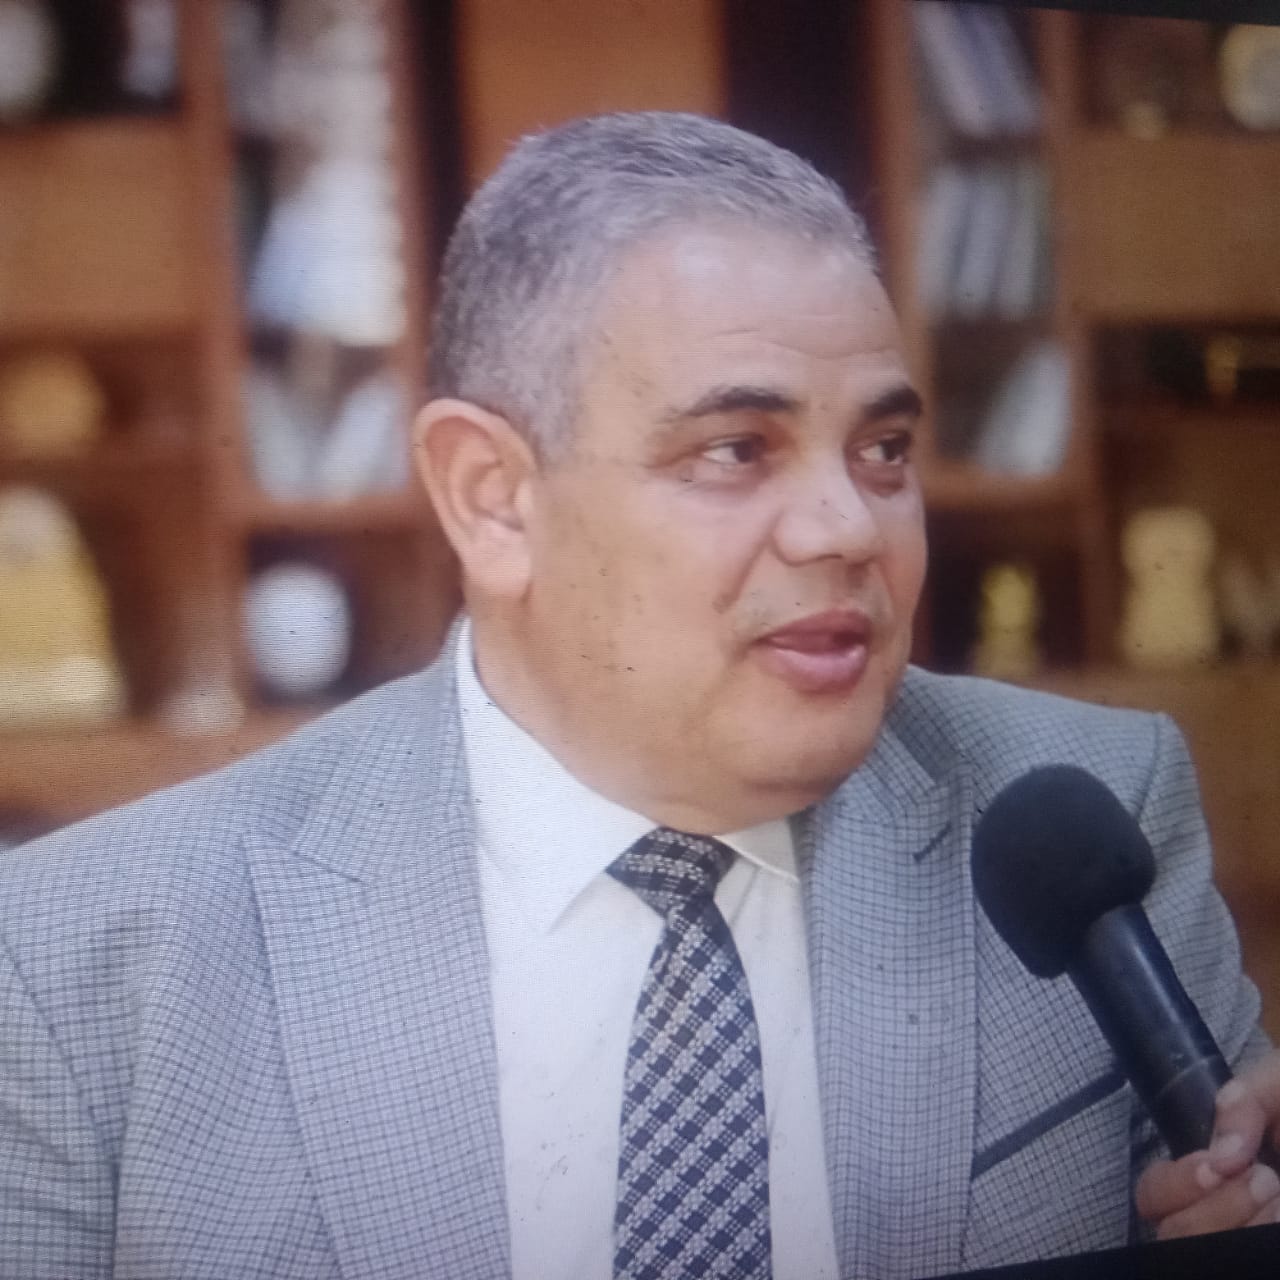 رئيس جامعة كفر الشيخ استعدادات كبيرة للعام الدراسي الجديد